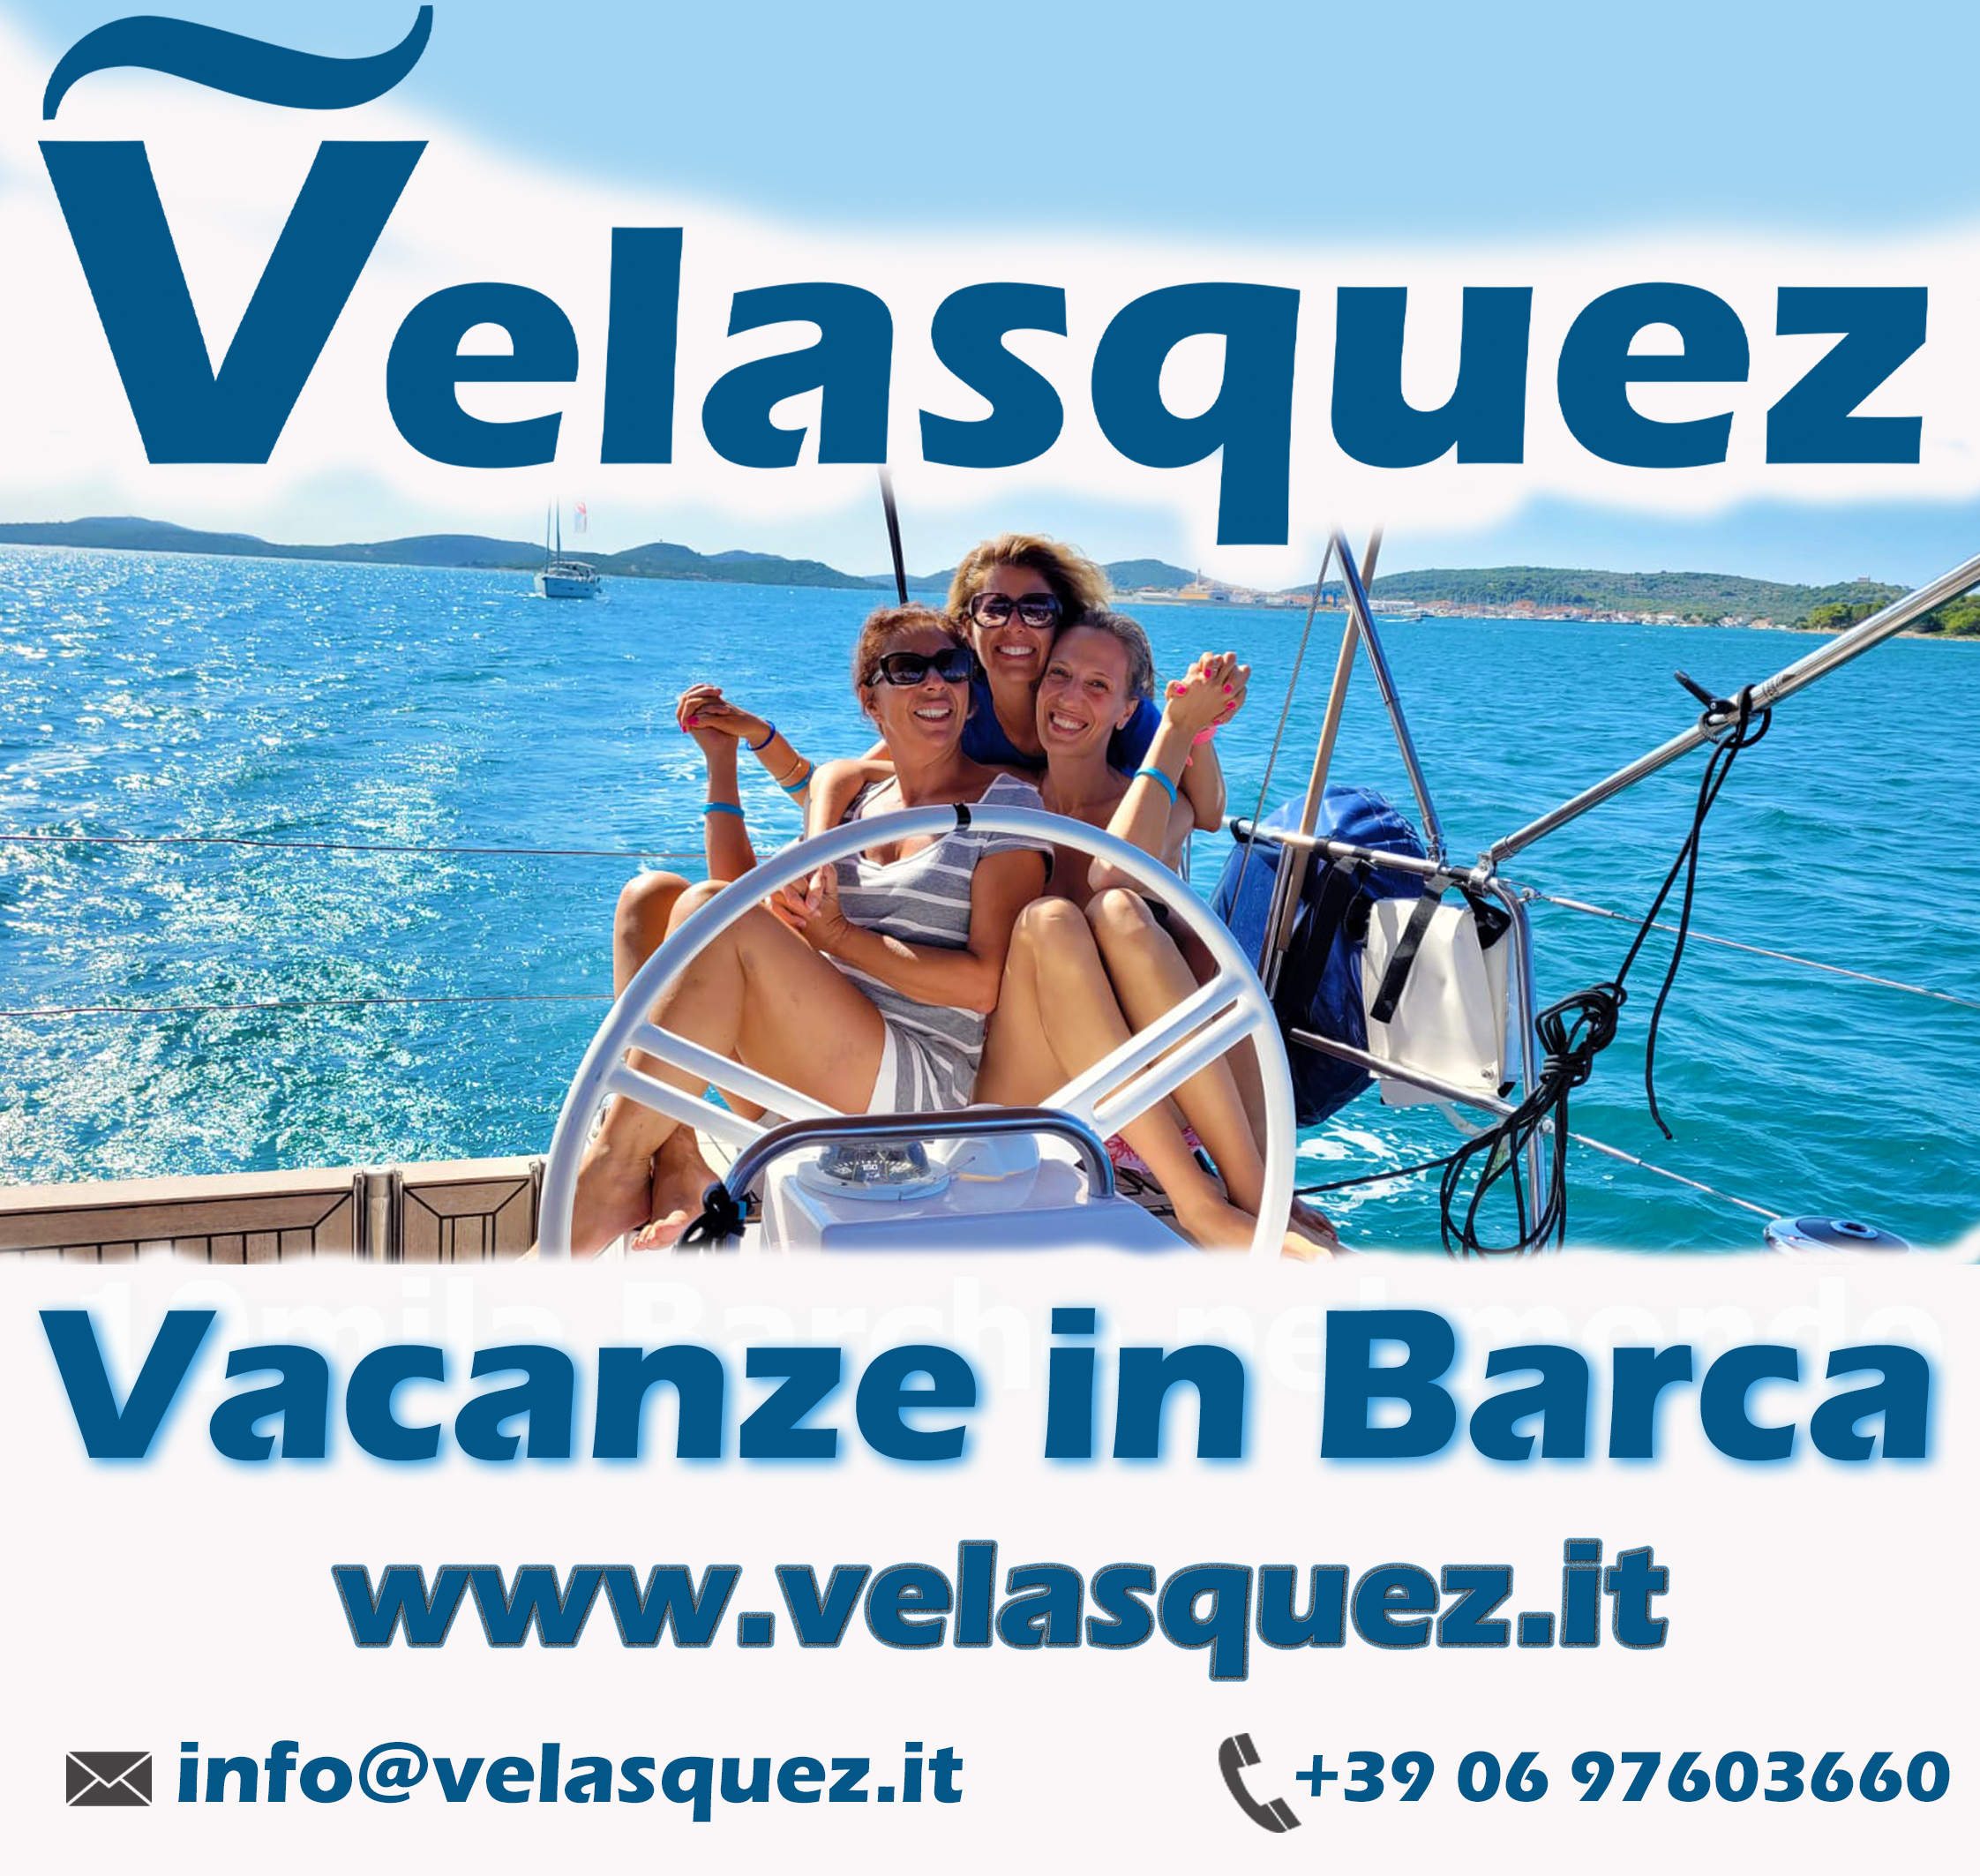 Velasquez - Vacanze in Barca  